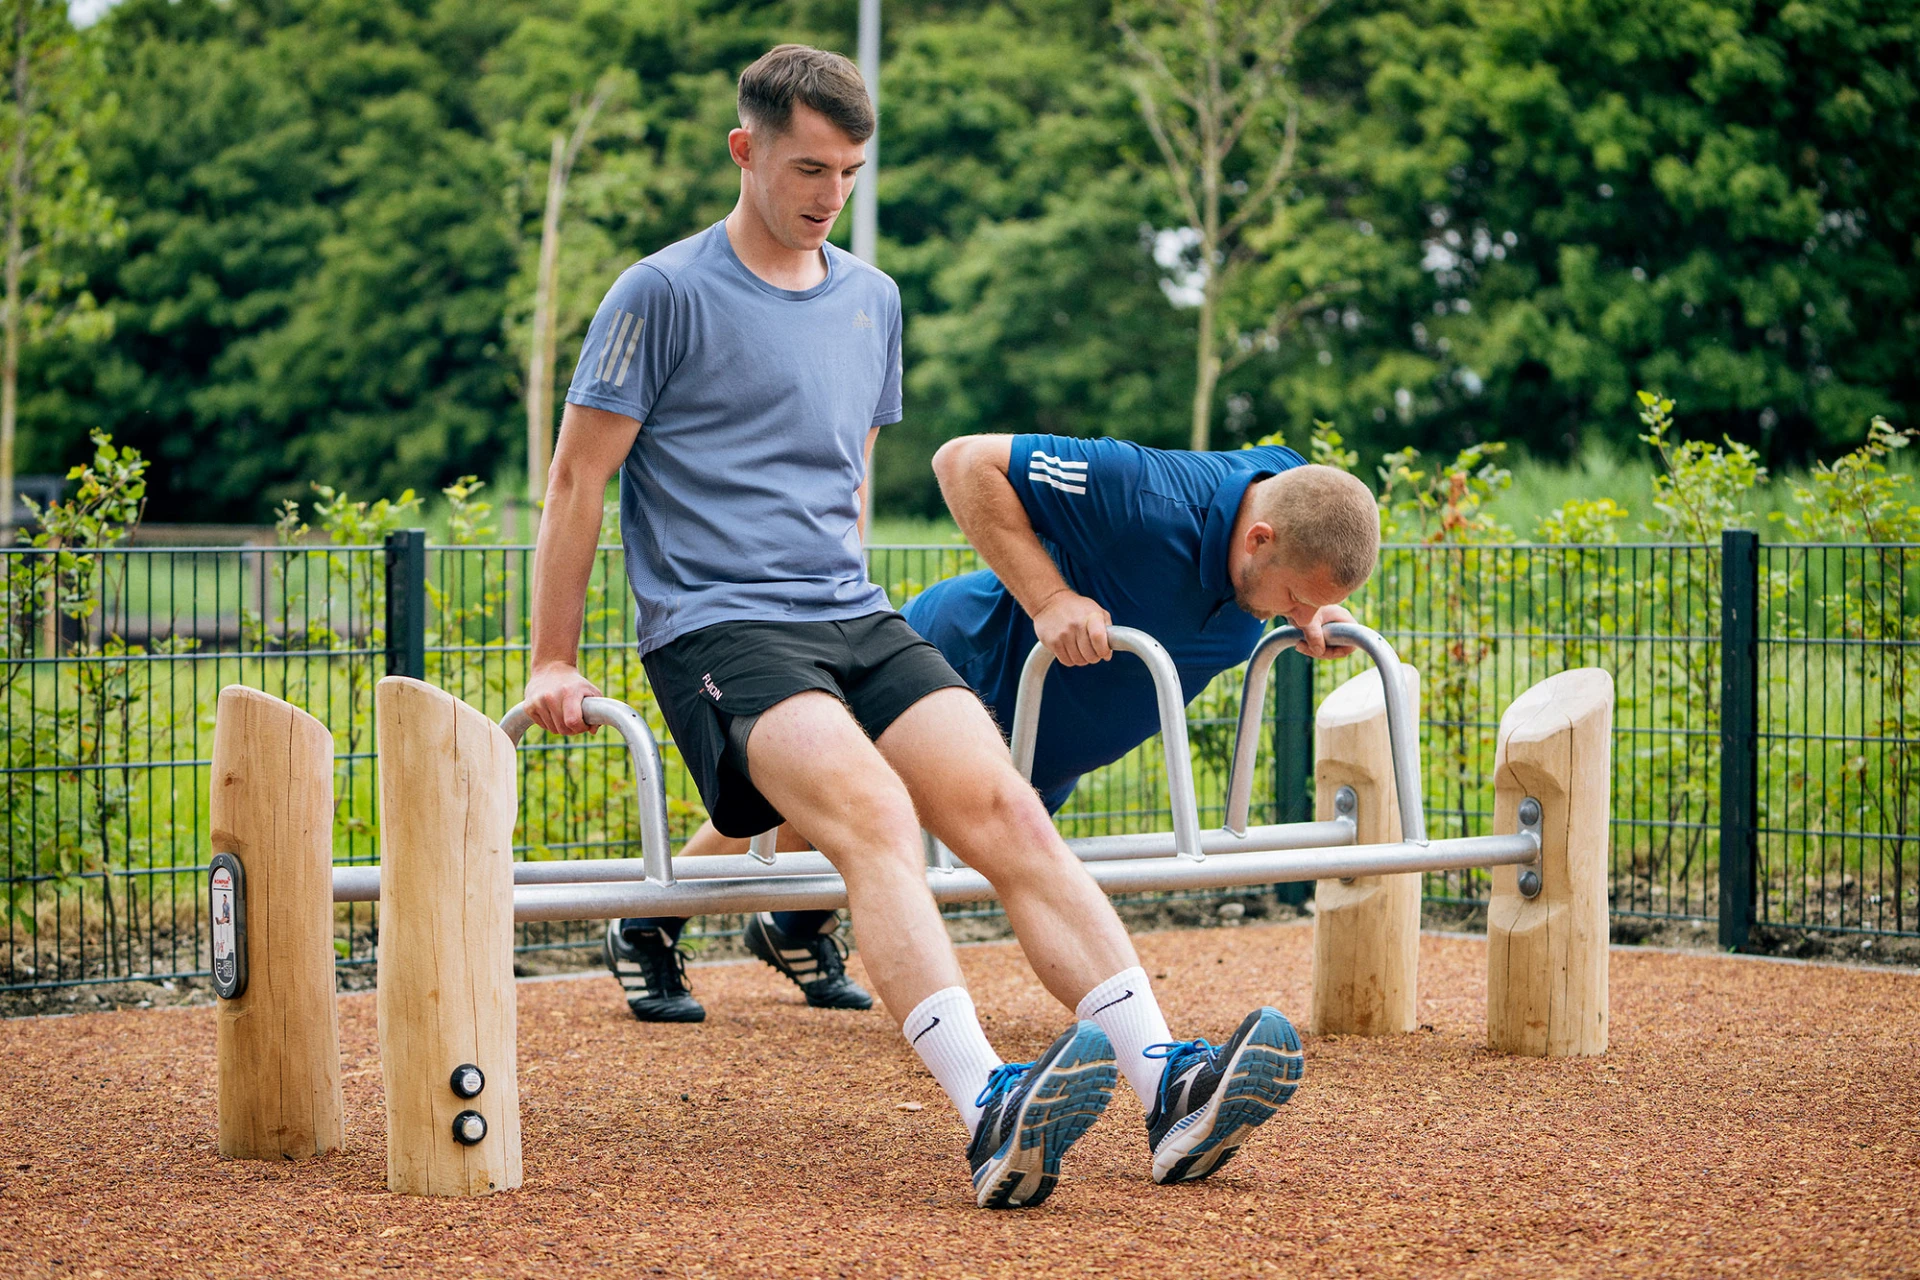 Outdoor Fitnessgeräte aus Holz für Sportanlagen in Parks Referenzbild